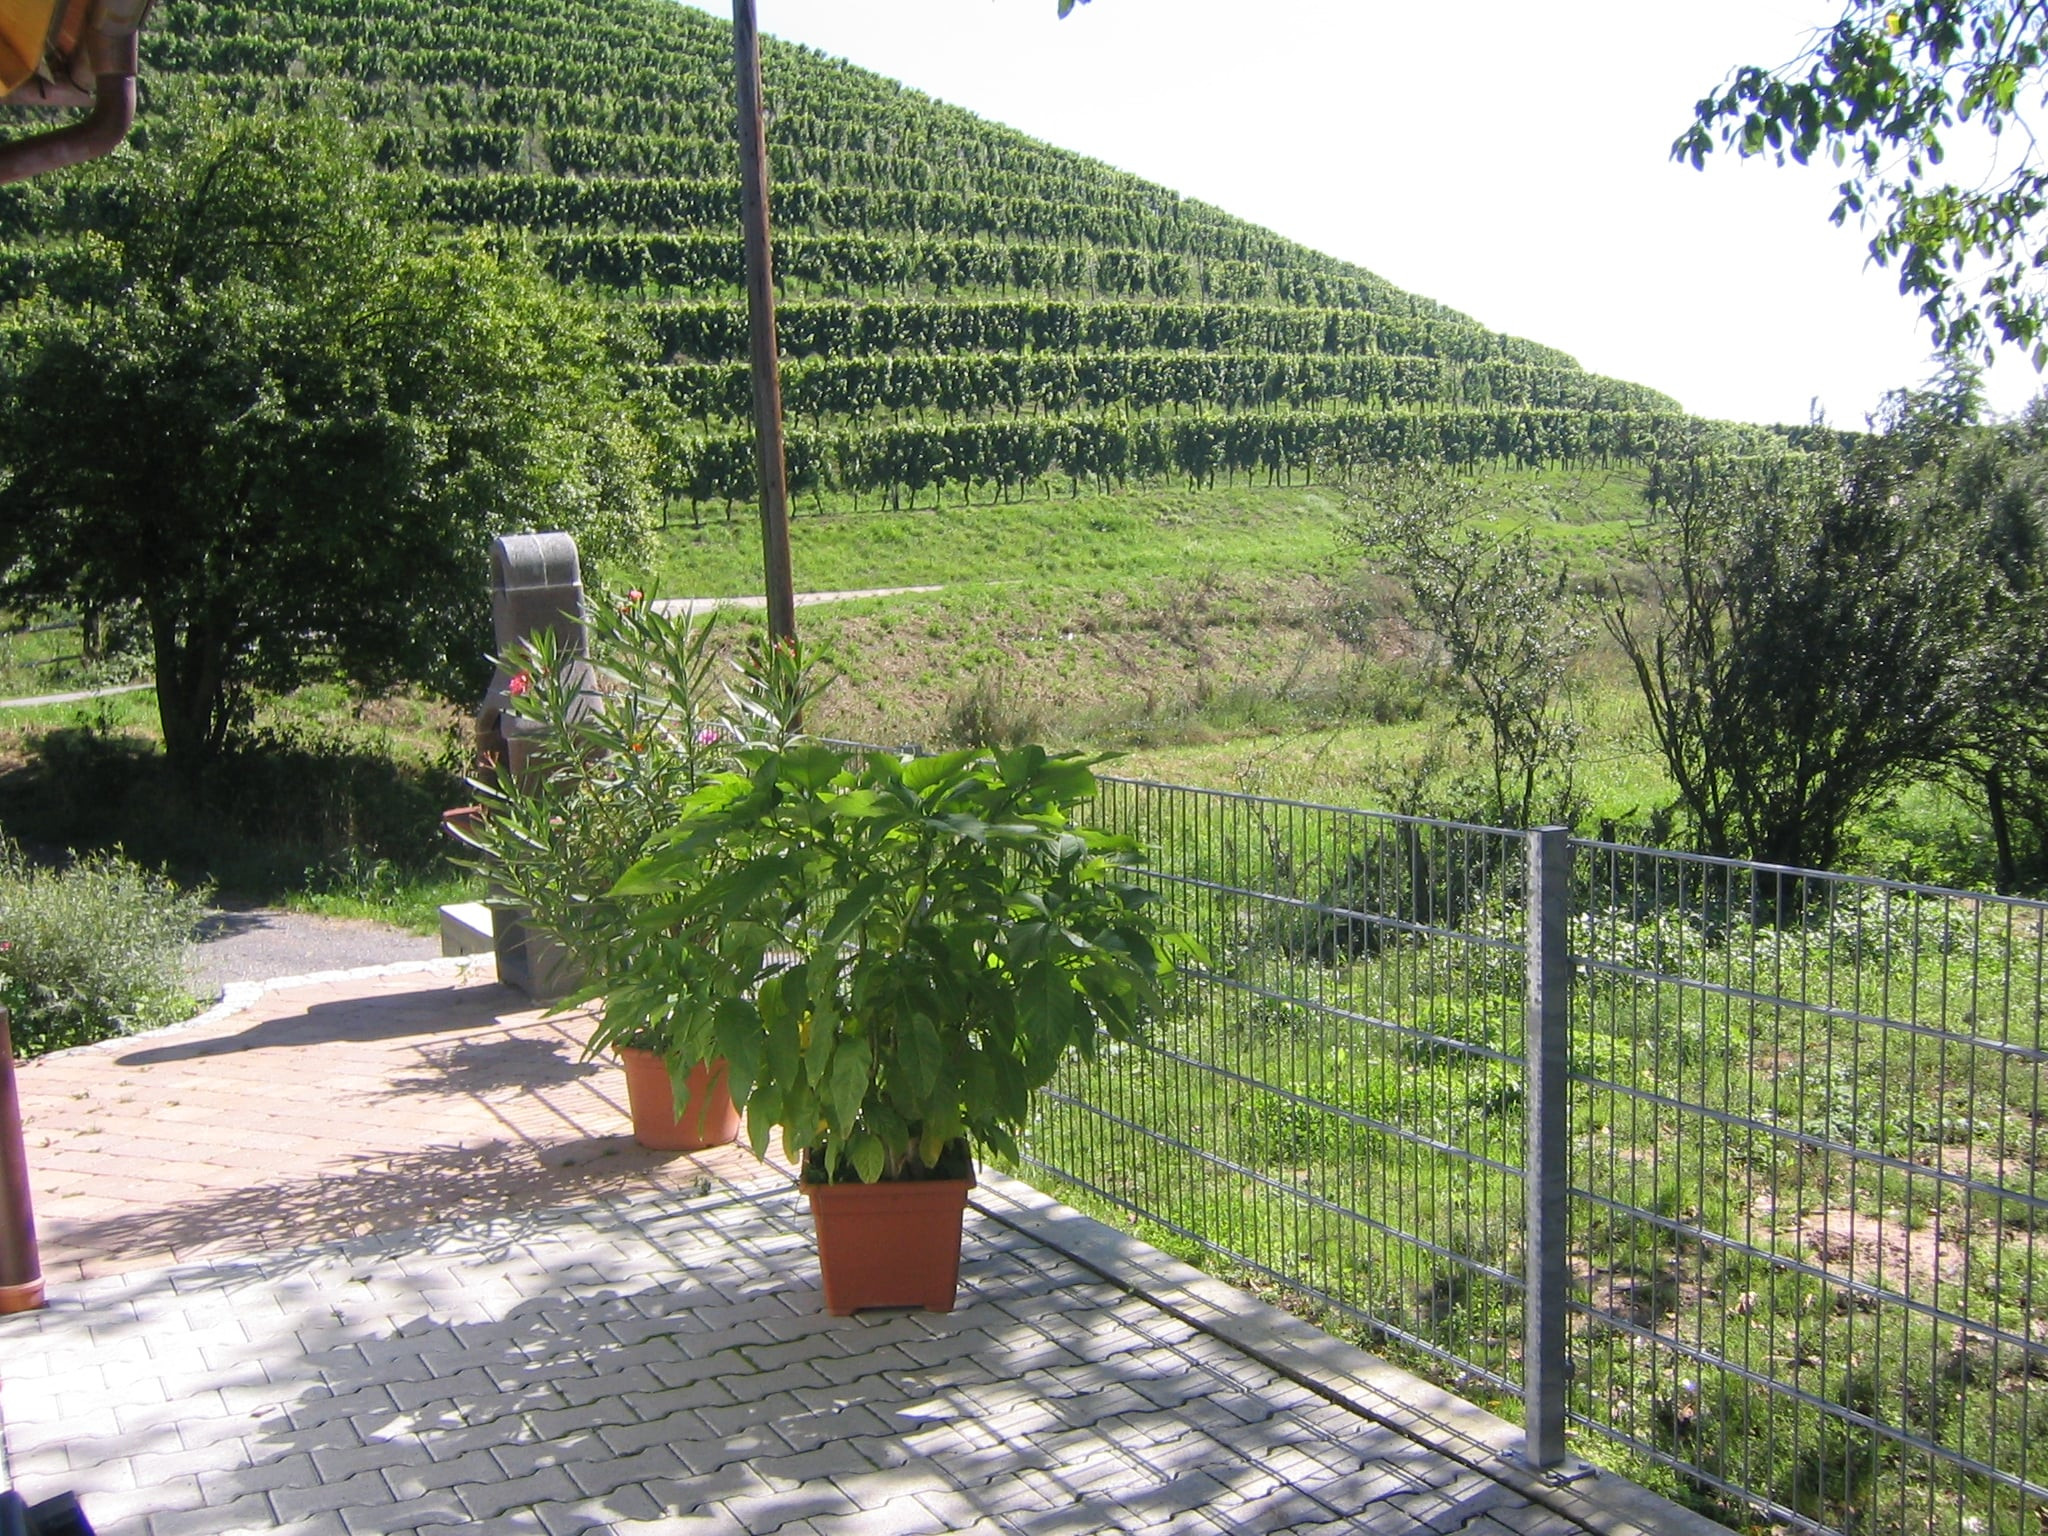 Besenwirtschaft Weingut Echle | Brackenheim-Neipperg